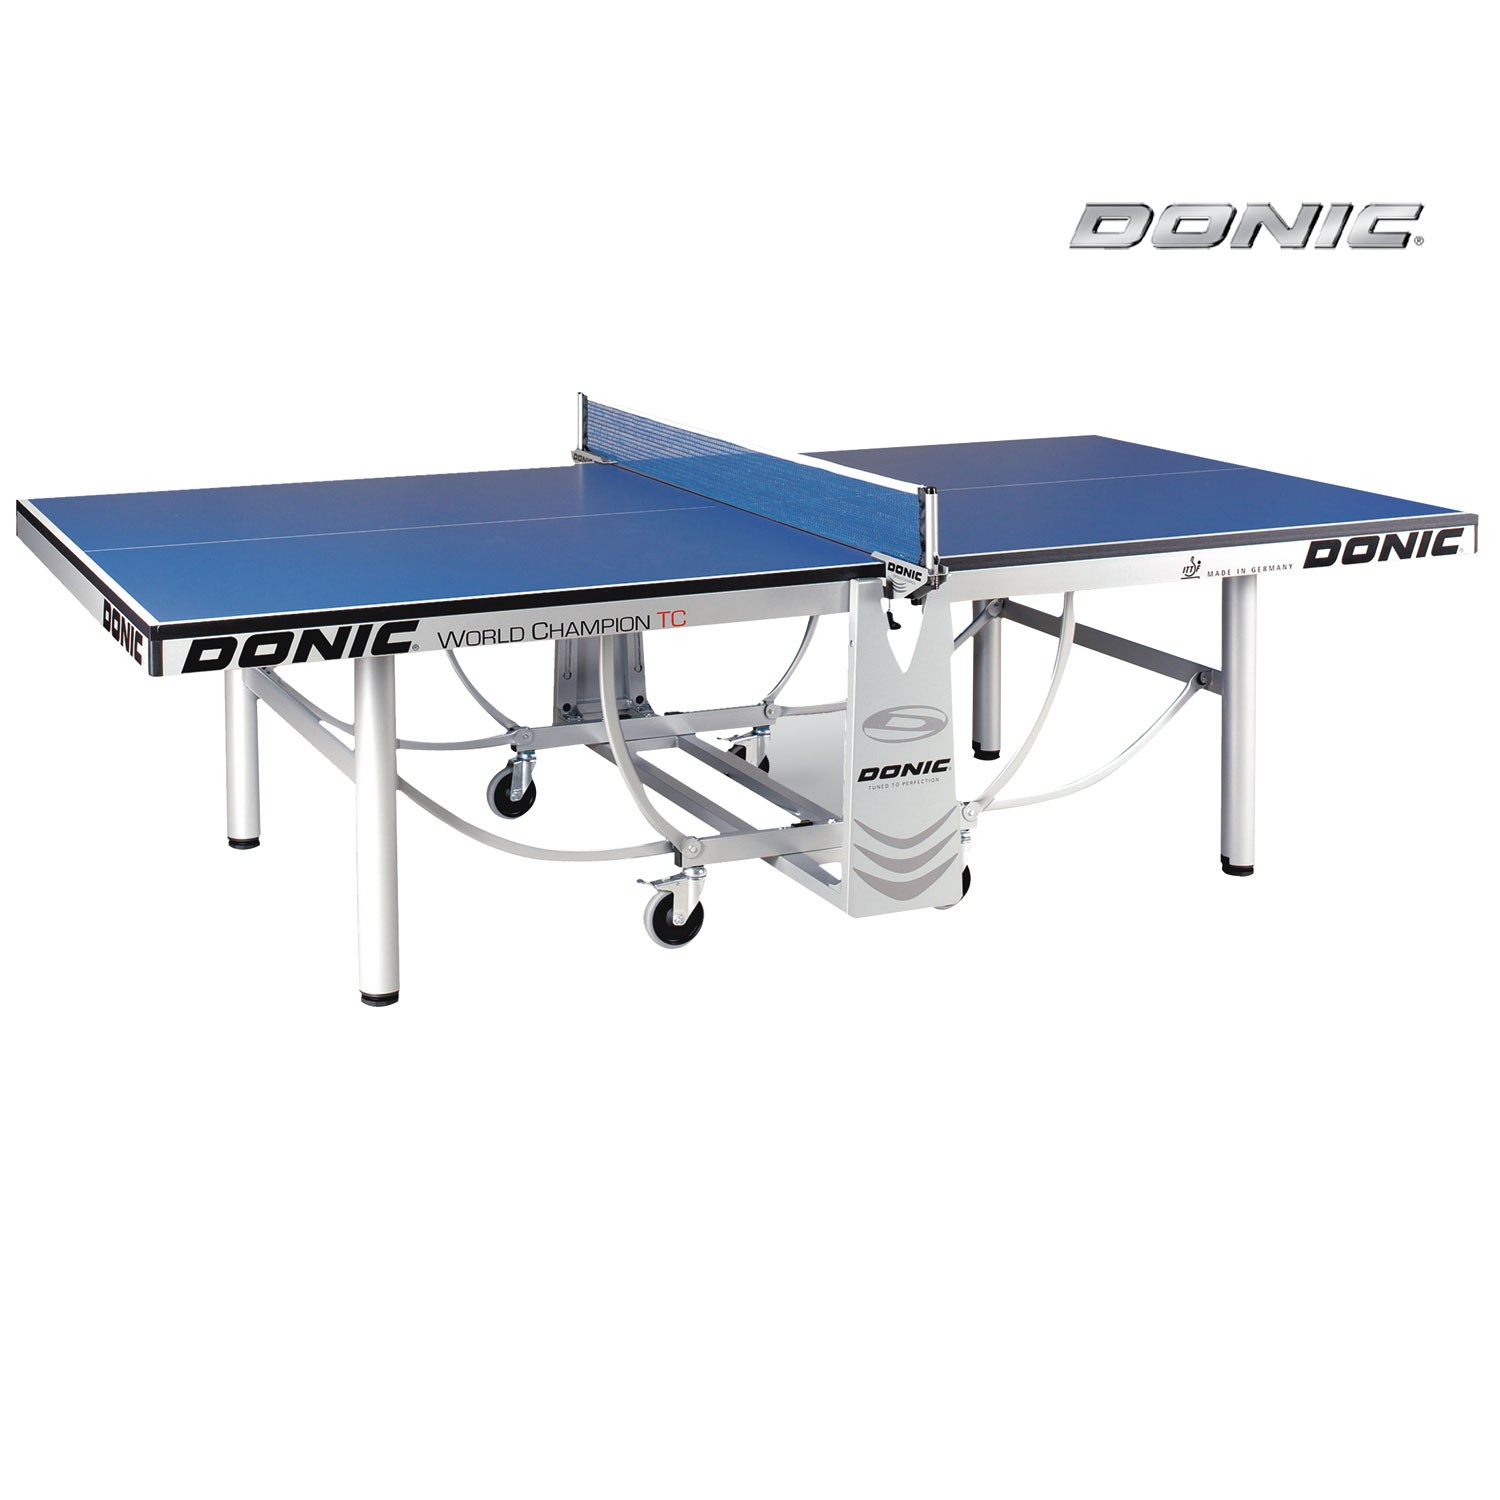 Теннисный стол Donic WORLD CHAMPION TC синий (без сетки)